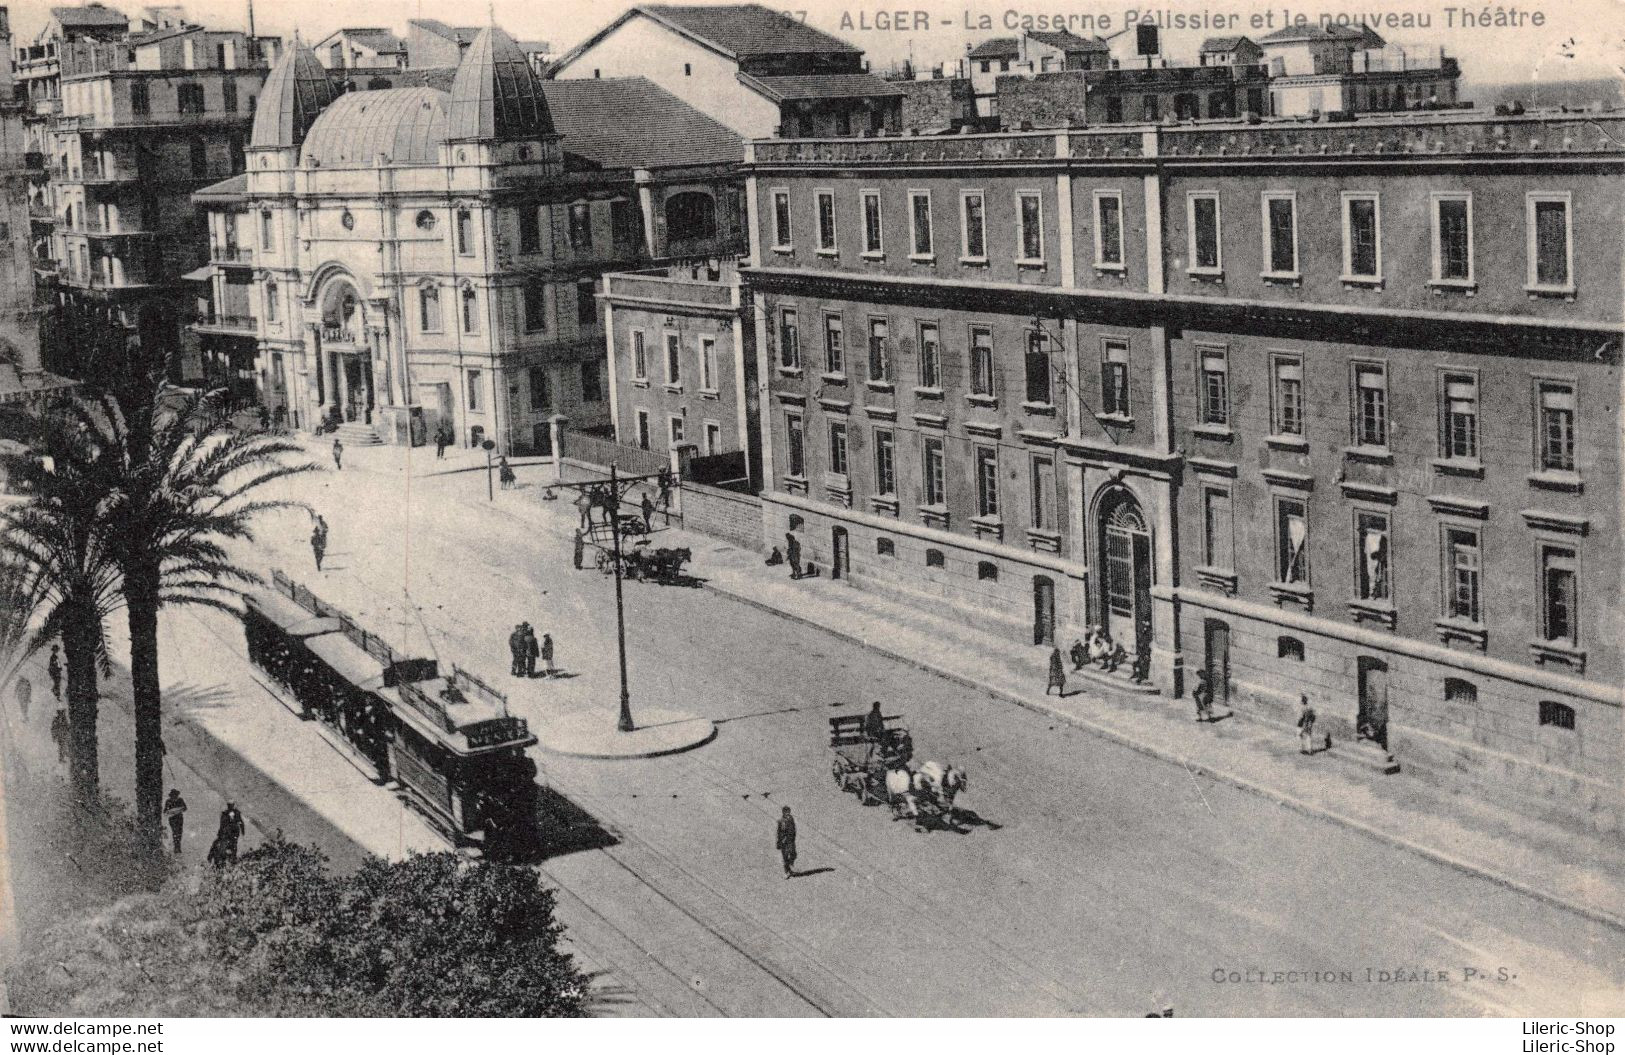 ALGER  La Caserne Pélissier Et Le Nouveau Théâtre -  N°367 Collection Idéale - Tramway  Cpa  1933 ♥♥♥ - Algiers